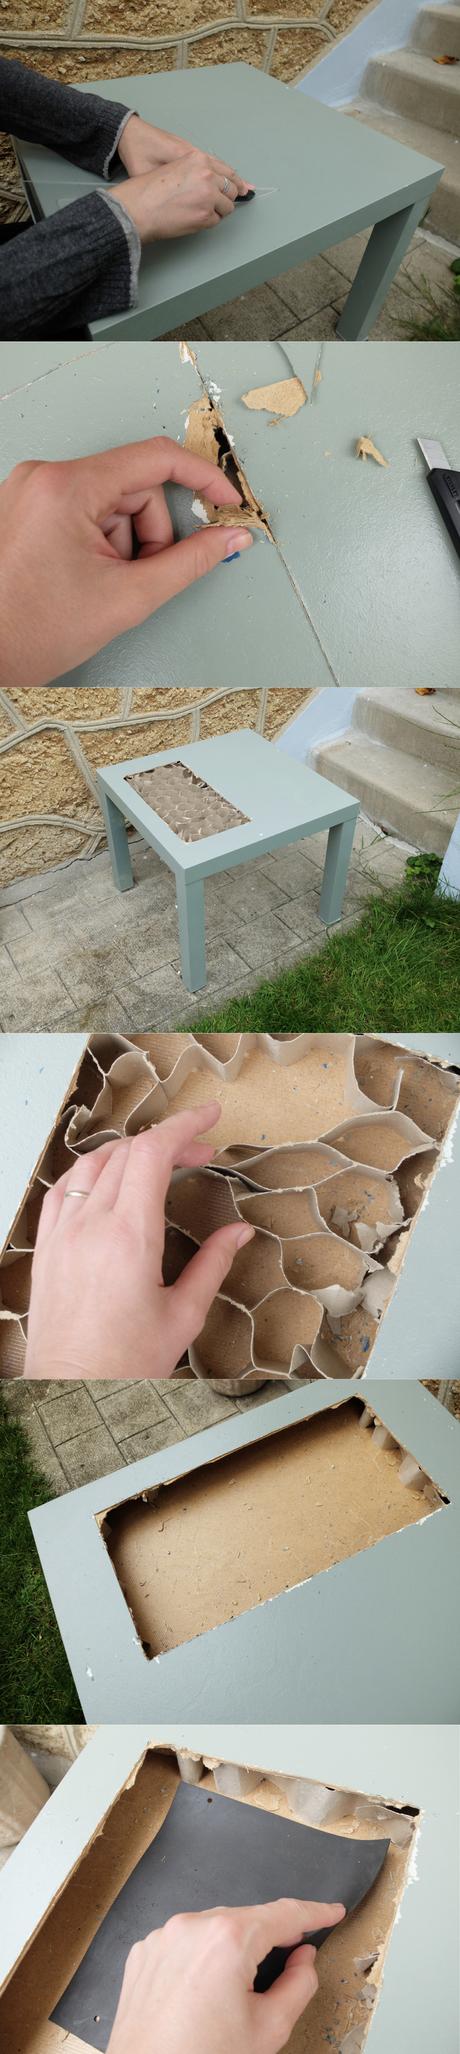 Fabriquer soi-même un table jardiniere pas chère